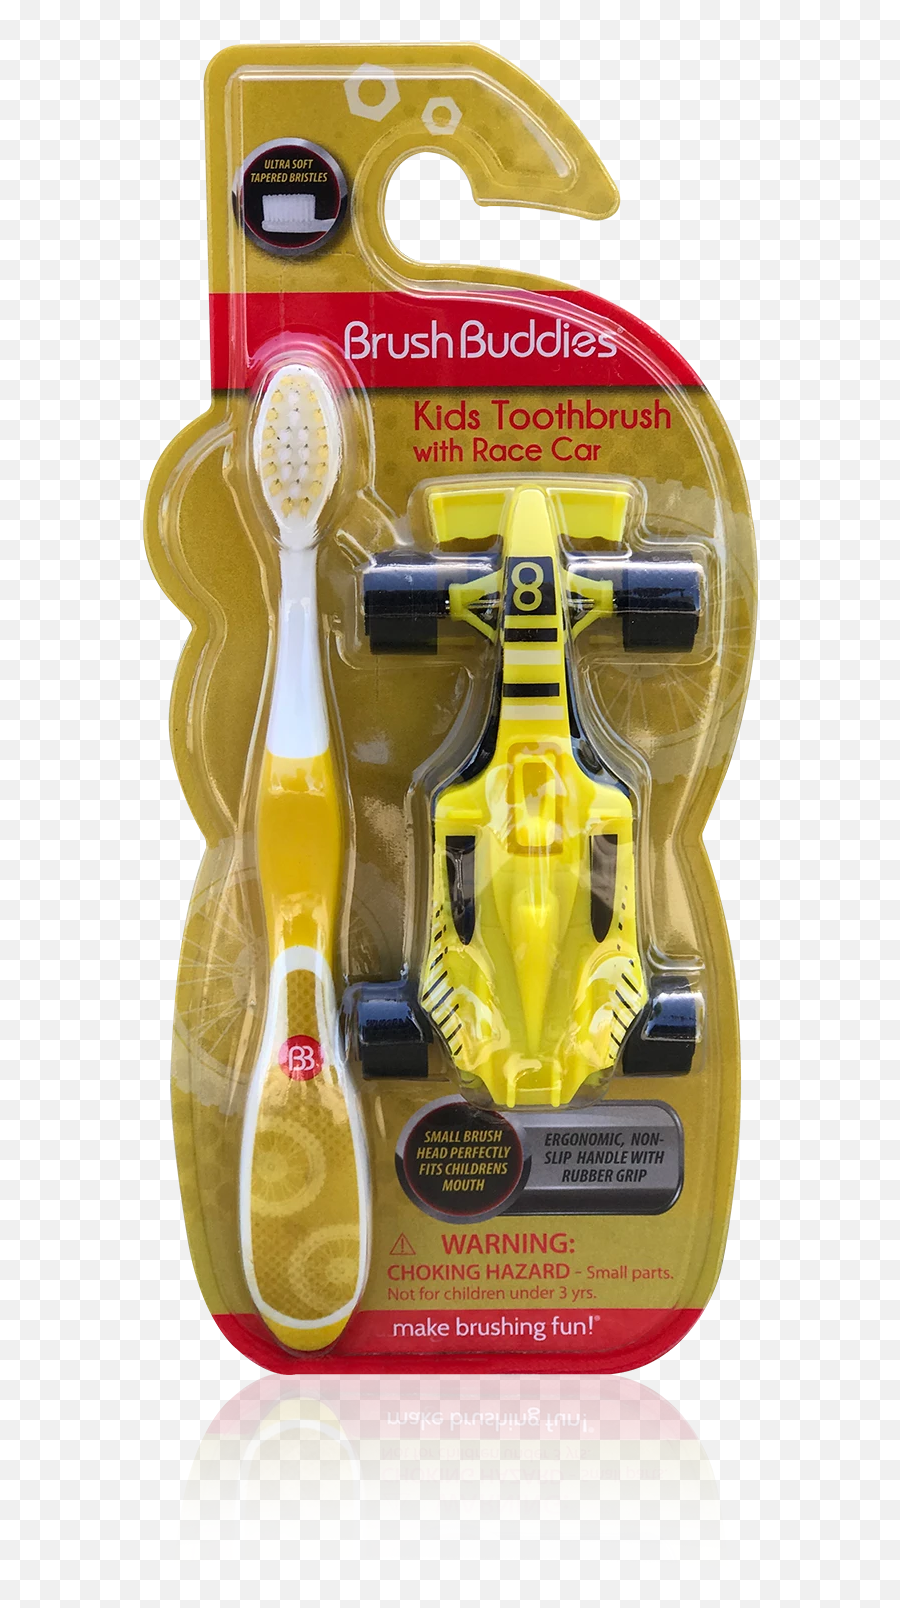 Brush Buddies Kids Toothbrush With Race Car - Mobile Phone Case Emoji,Racecar Emoji